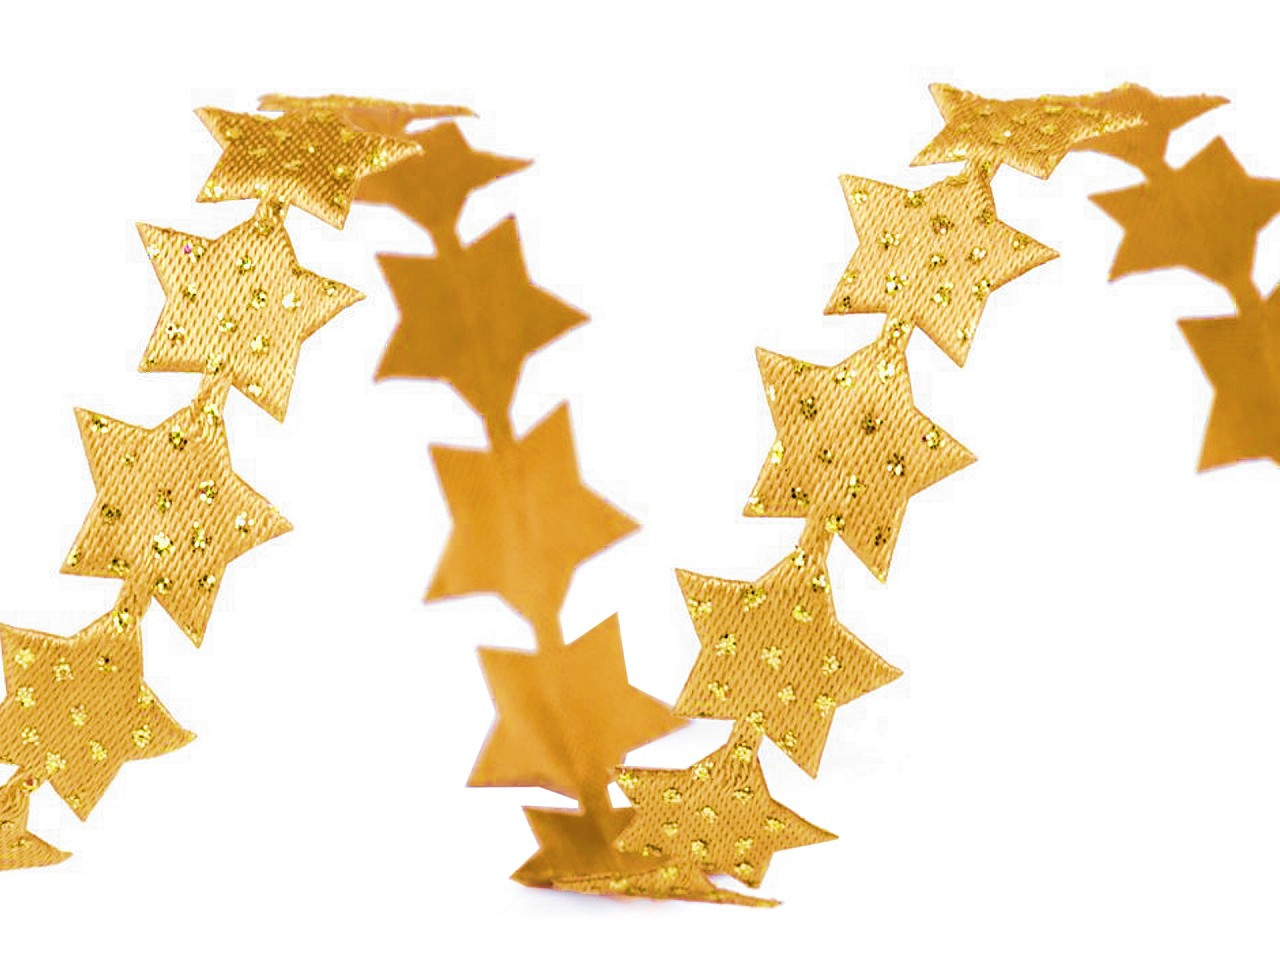 Saténový prýmek šíře 14 mm hvězda s glitry vánoční, barva 8 zlatá